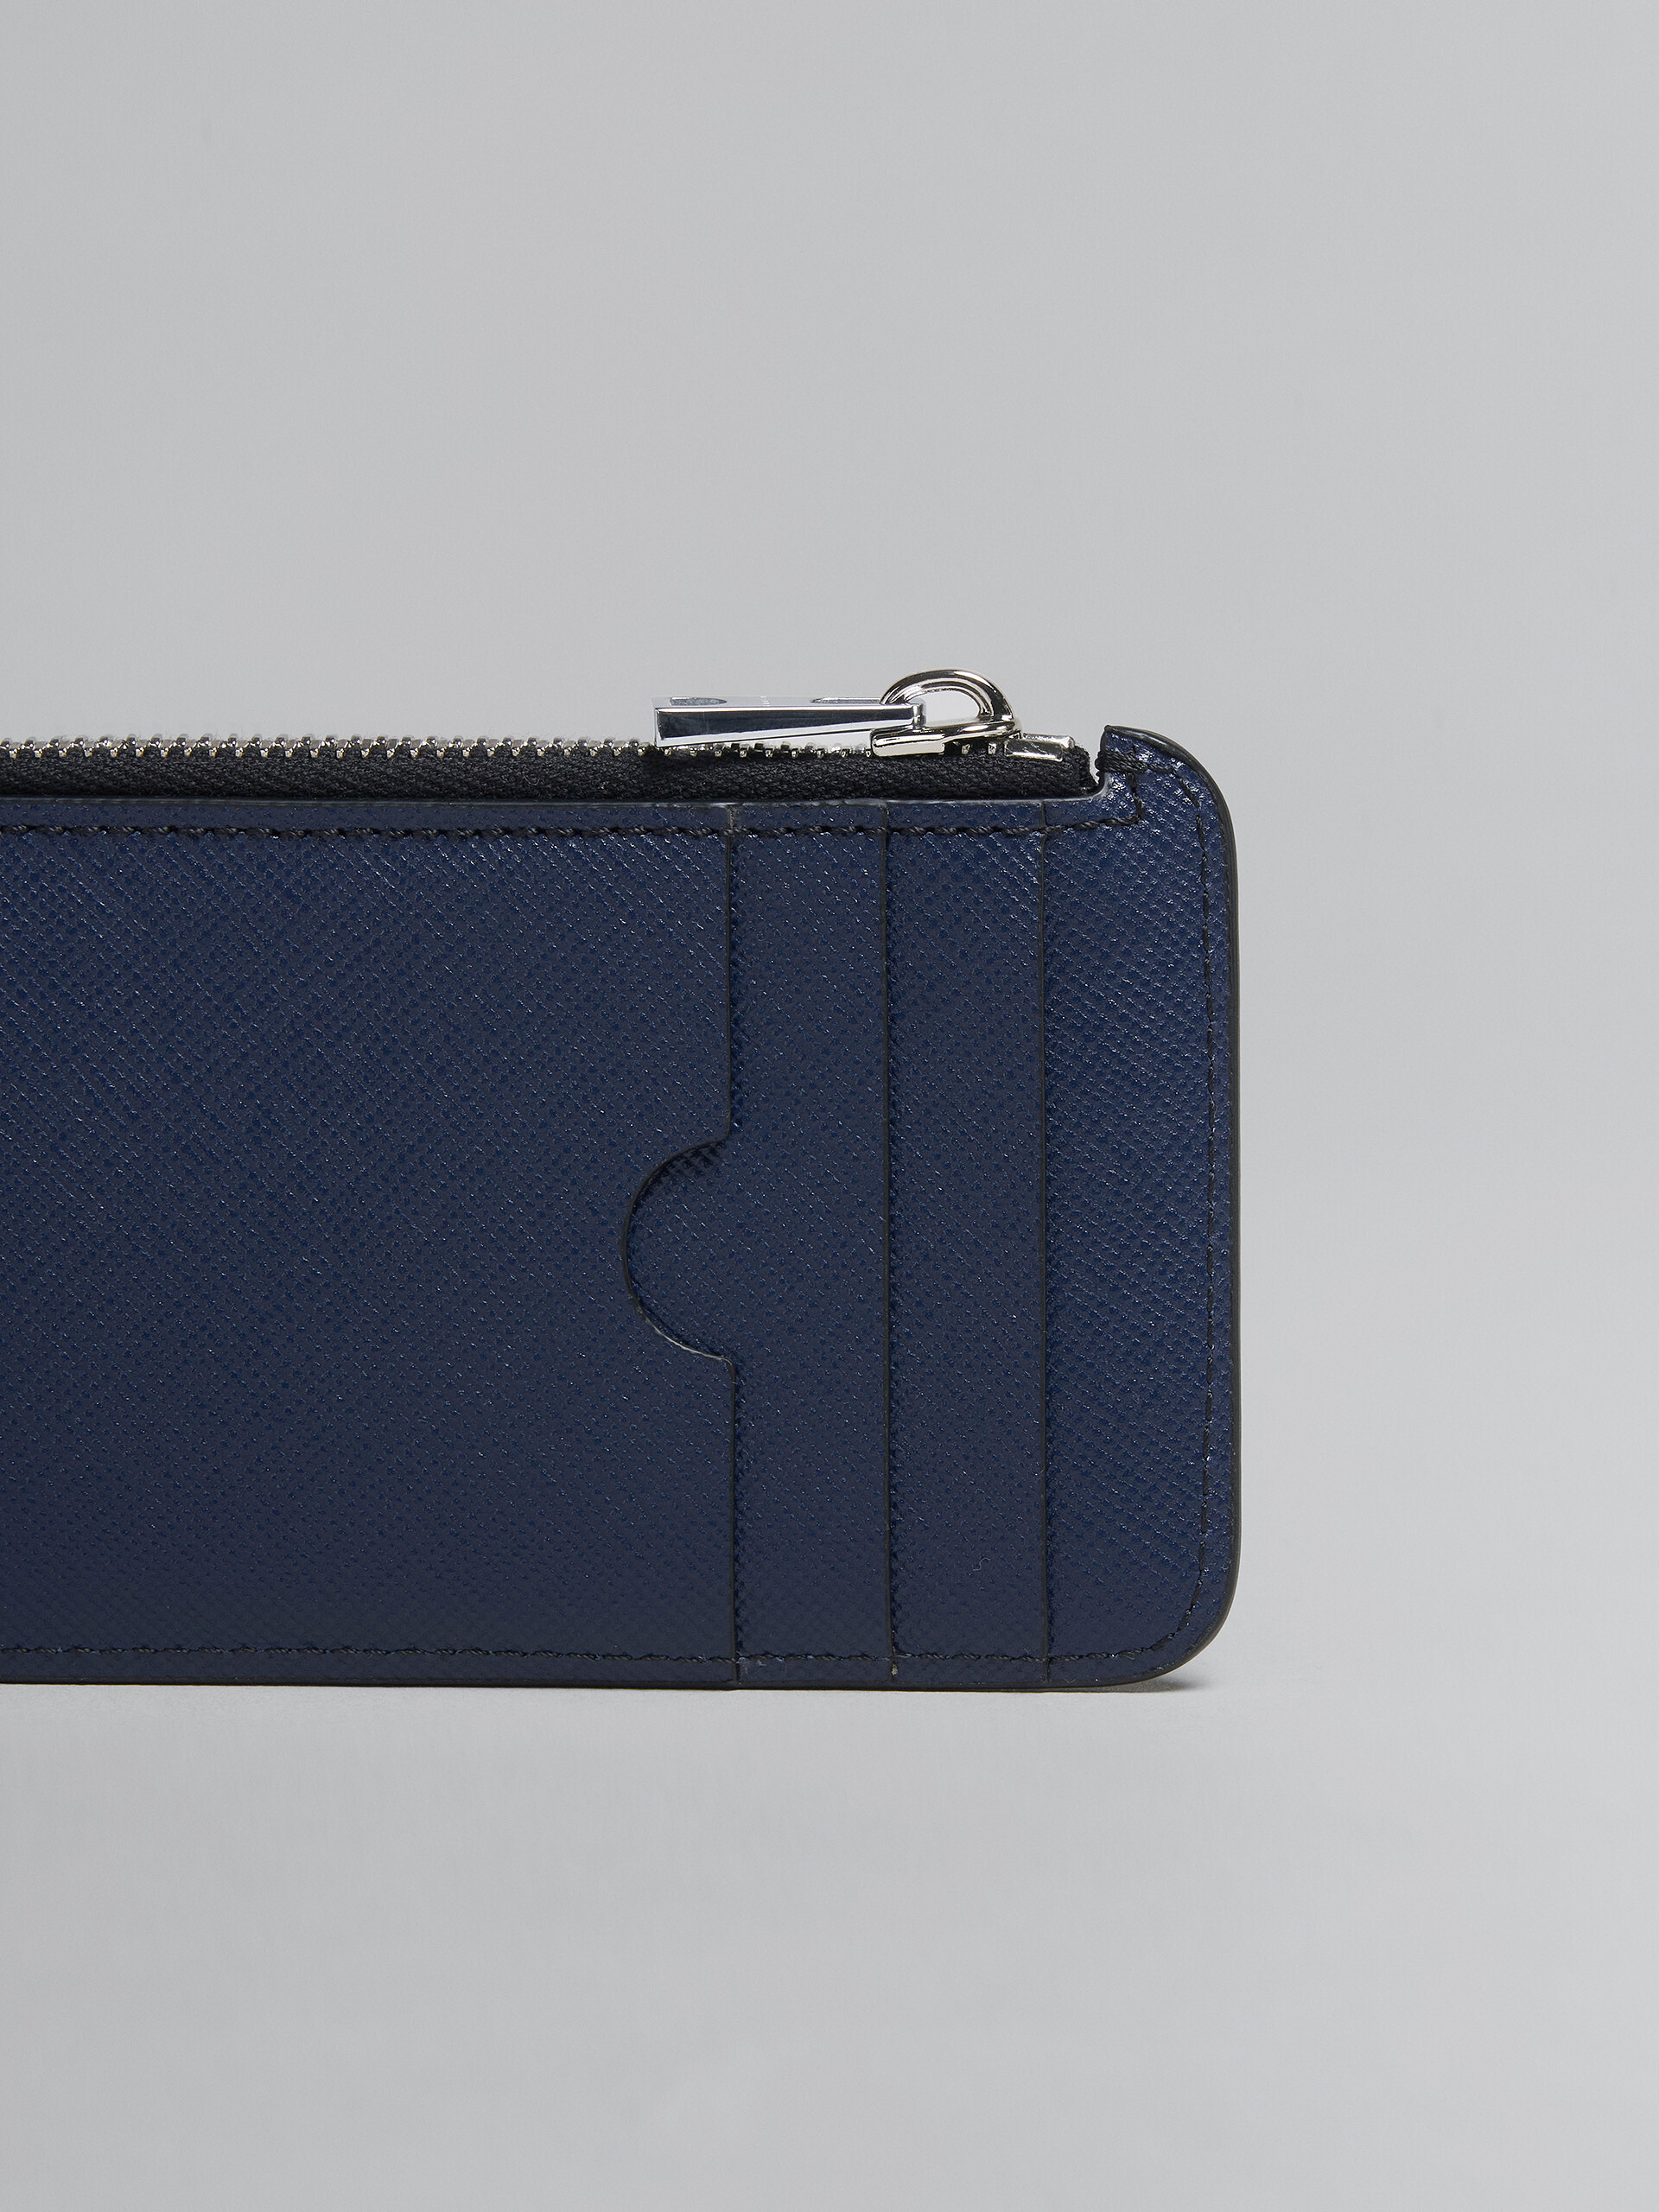 Porte-cartes zippé en cuir saffiano bleu et noir - Portefeuilles - Image 4